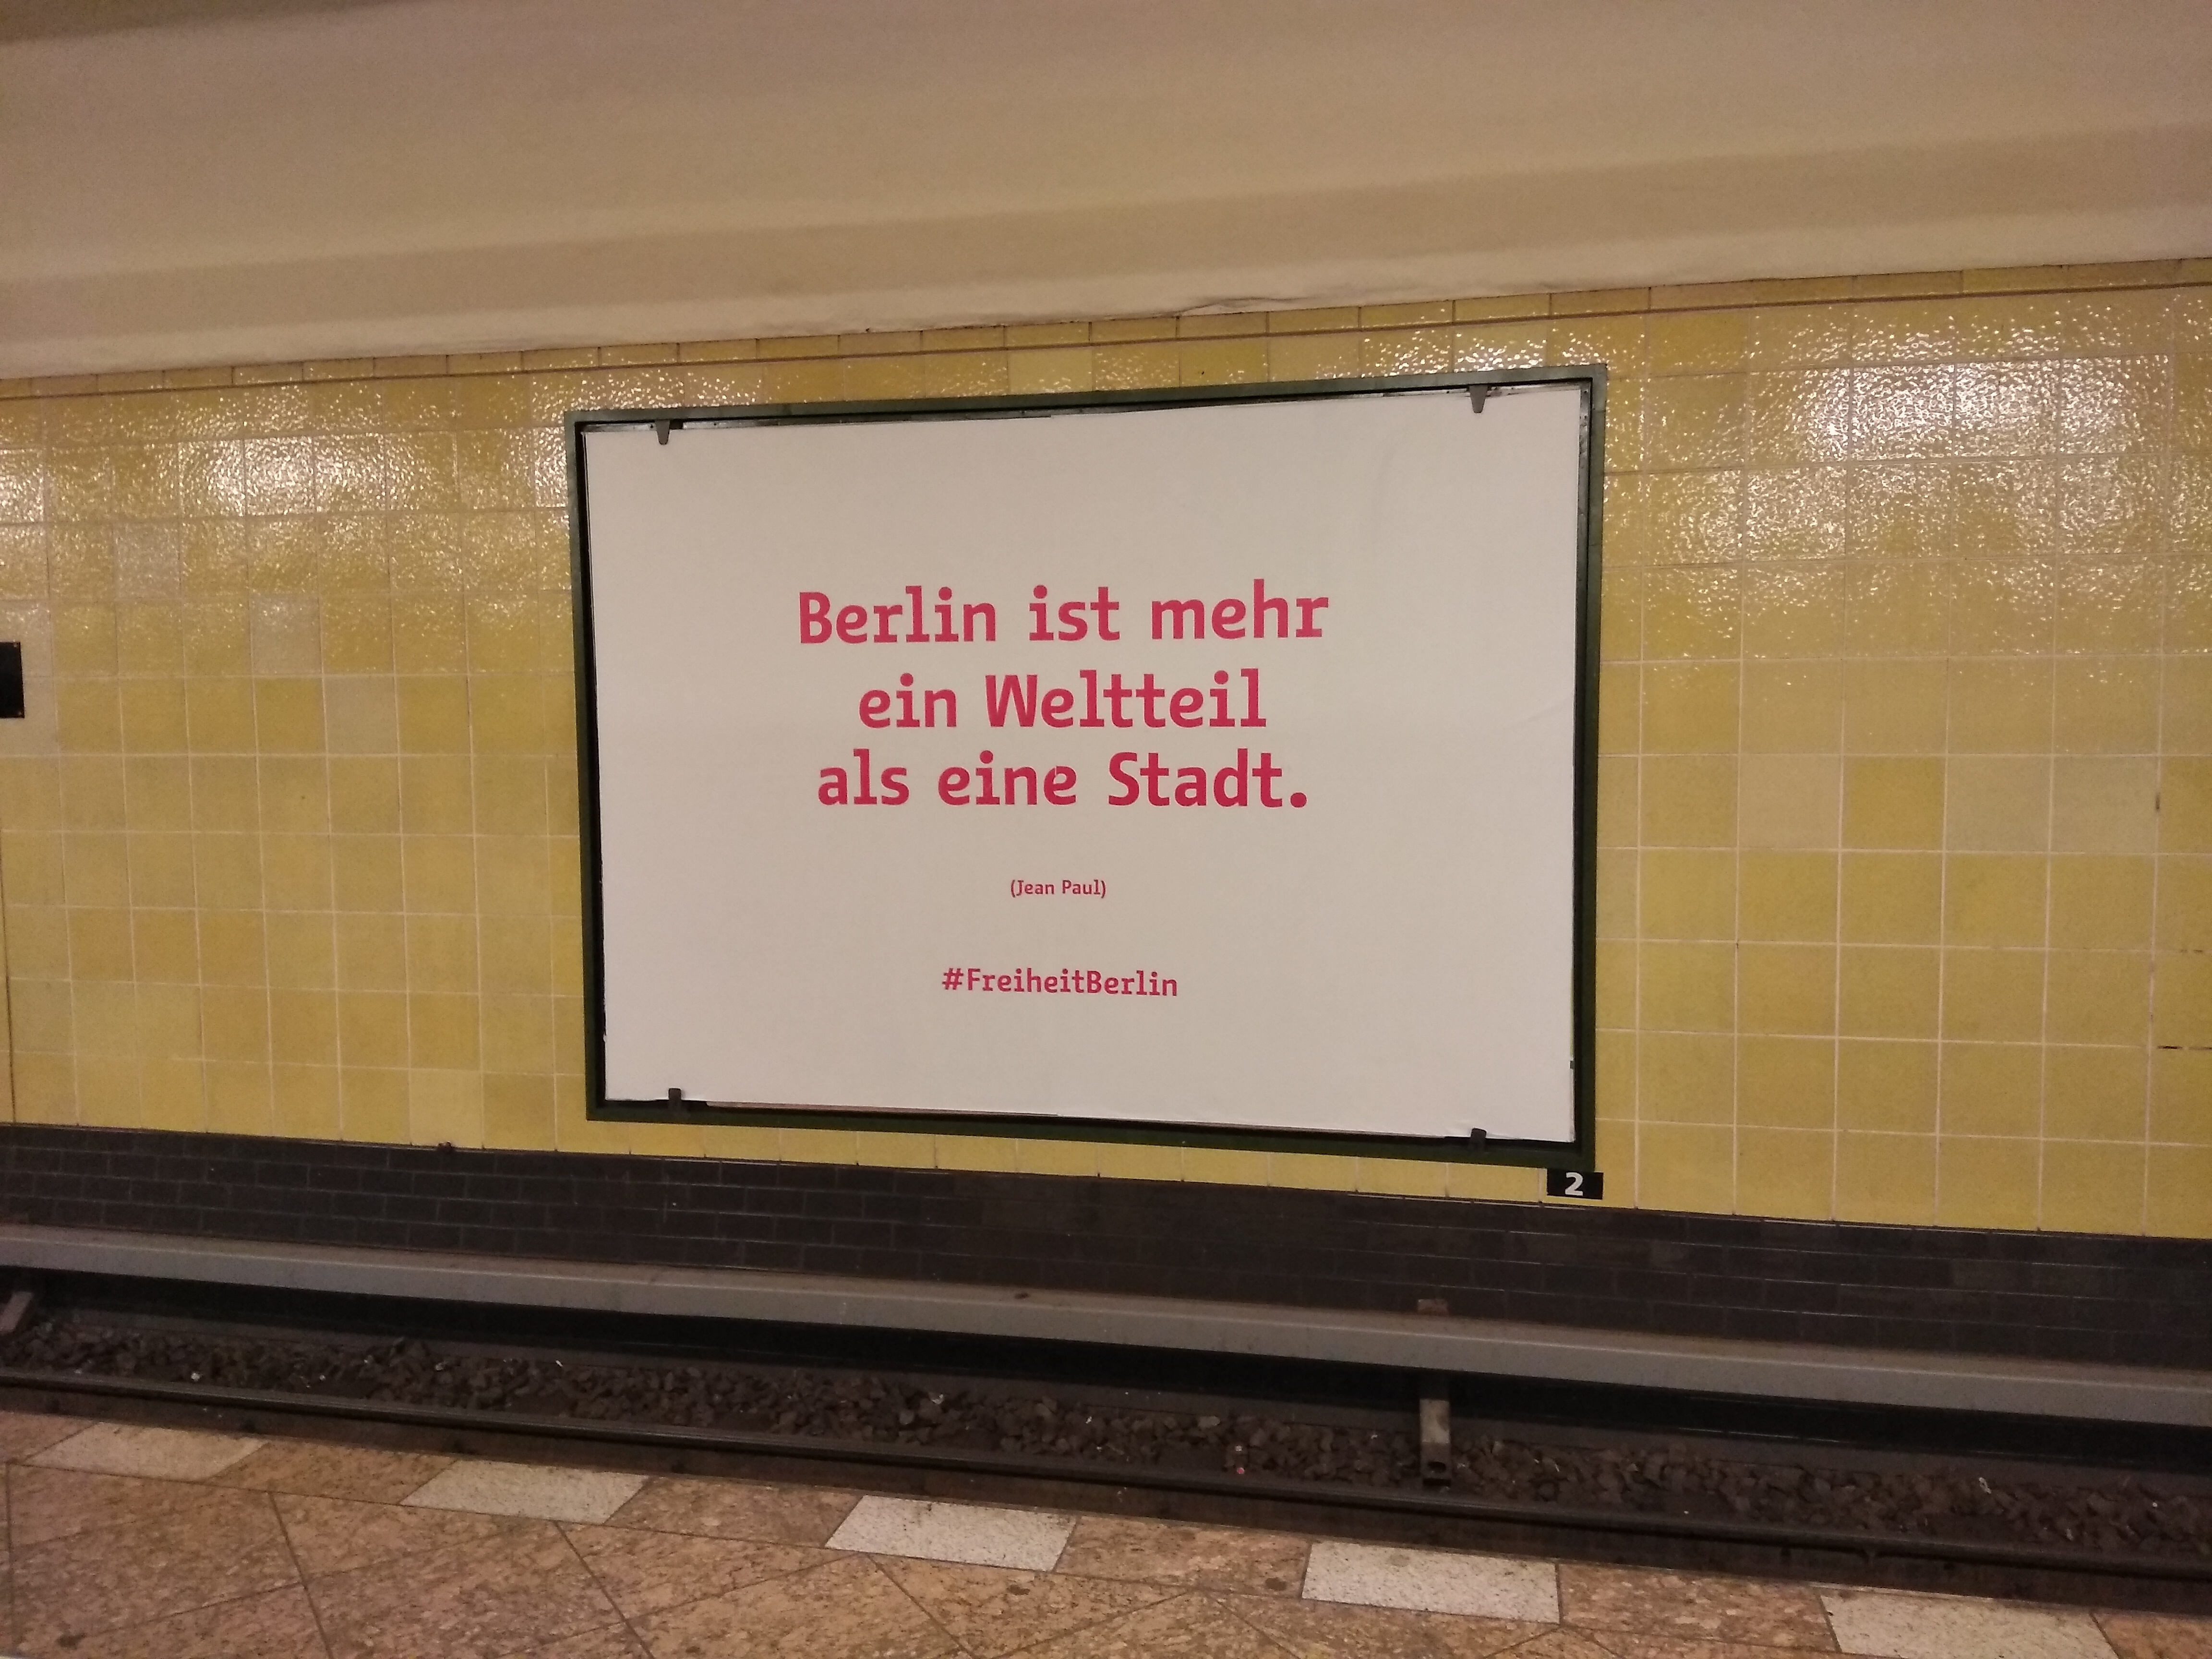 Berlin inkább egy világrész, mint egy város (Jean Paul)